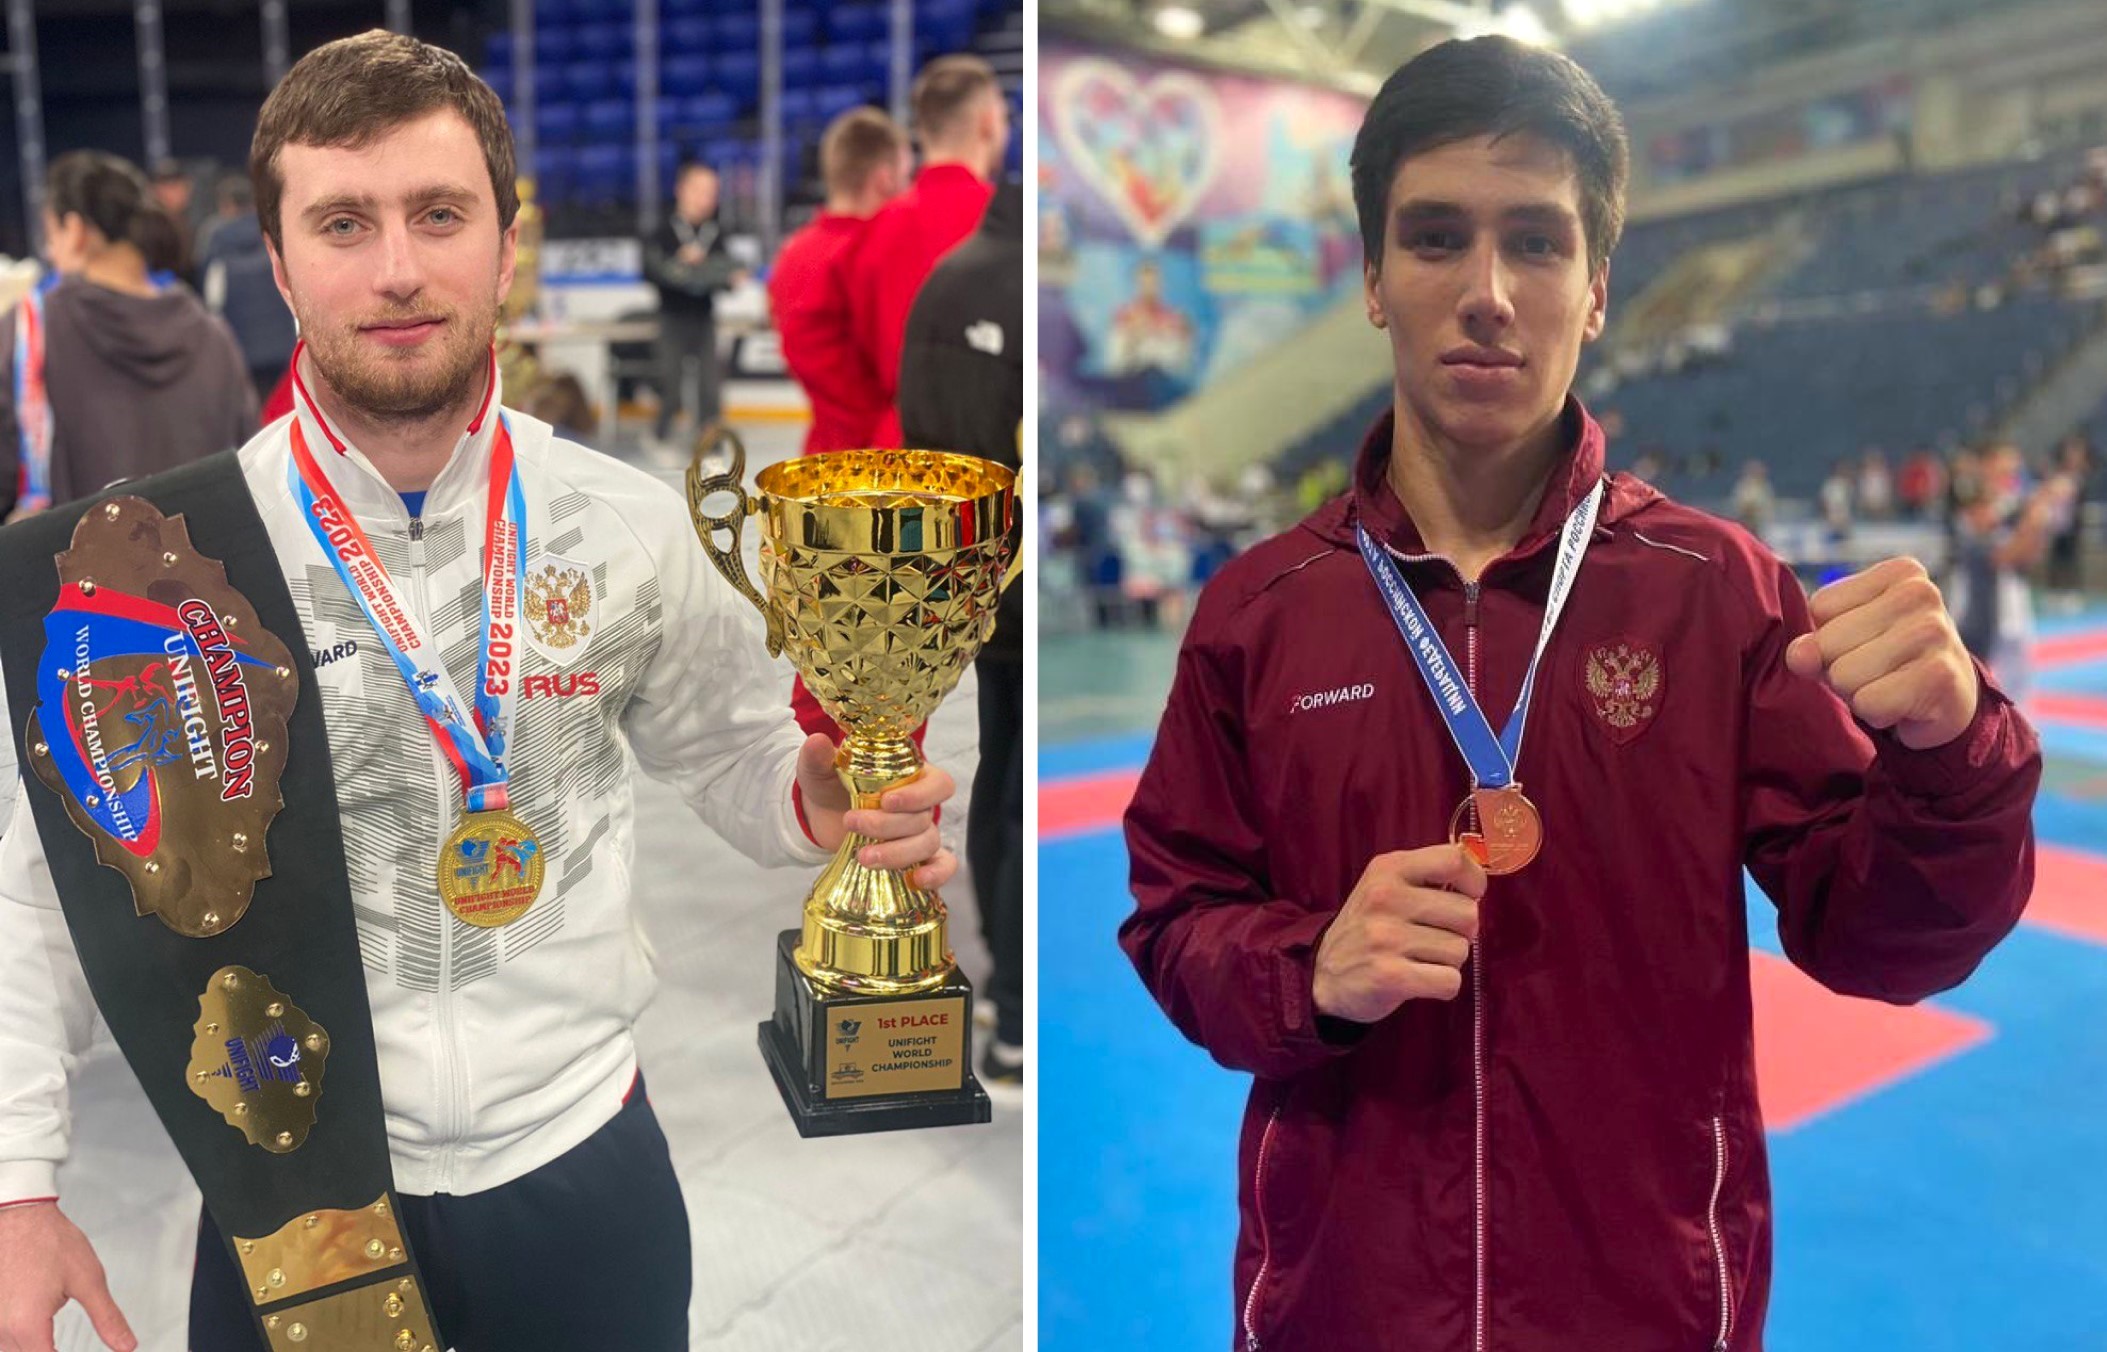 Рудольфу Яврумяну и Эдуарду Гаспаряну присвоено звание «Мастер спорта России международного класса»!